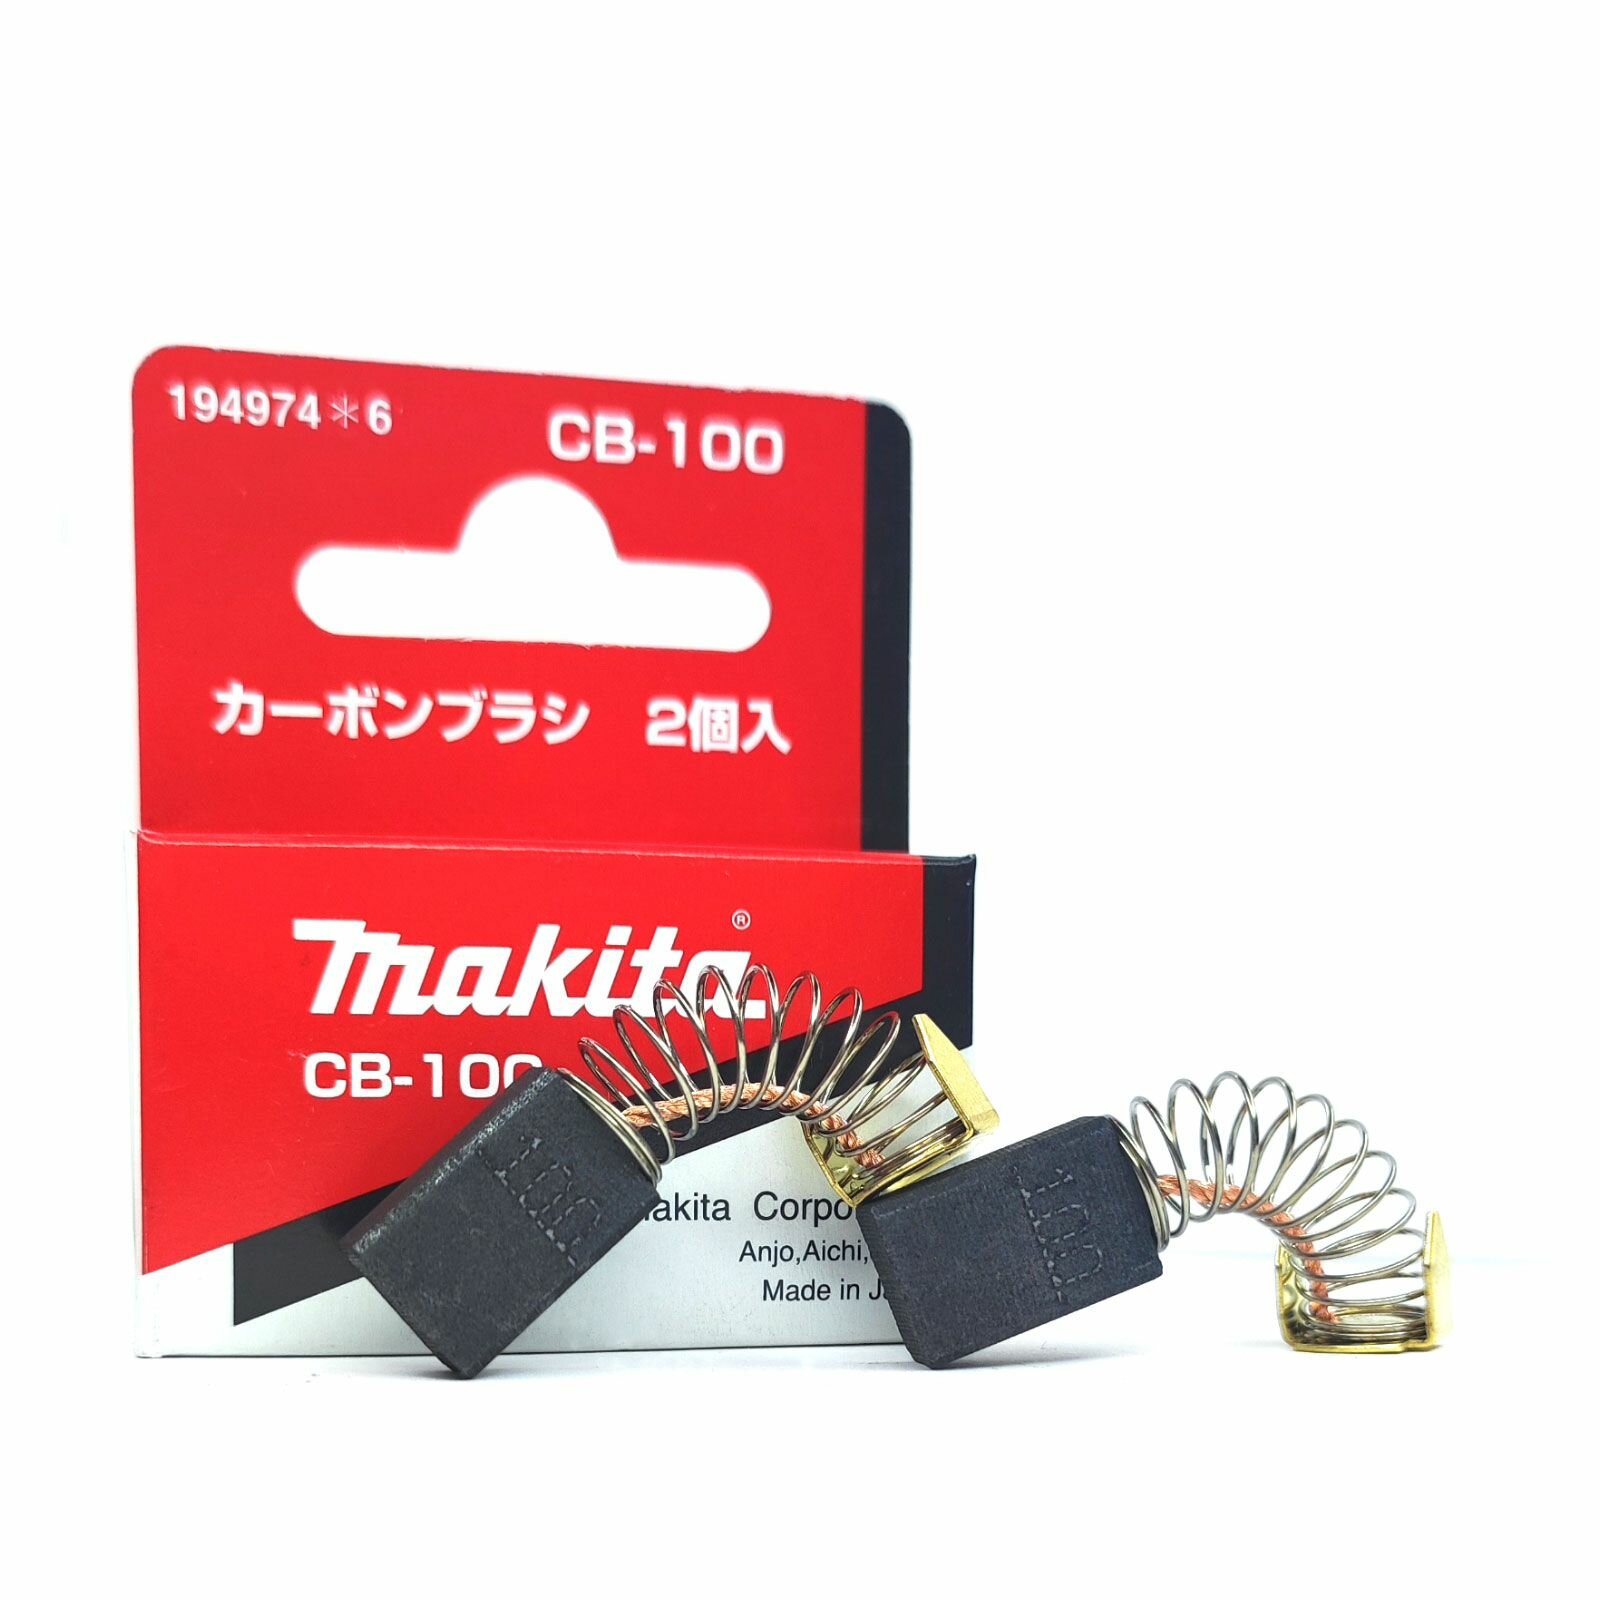 Угольные щетки(пара) Makita CB-100(194974-6, 181030-1)